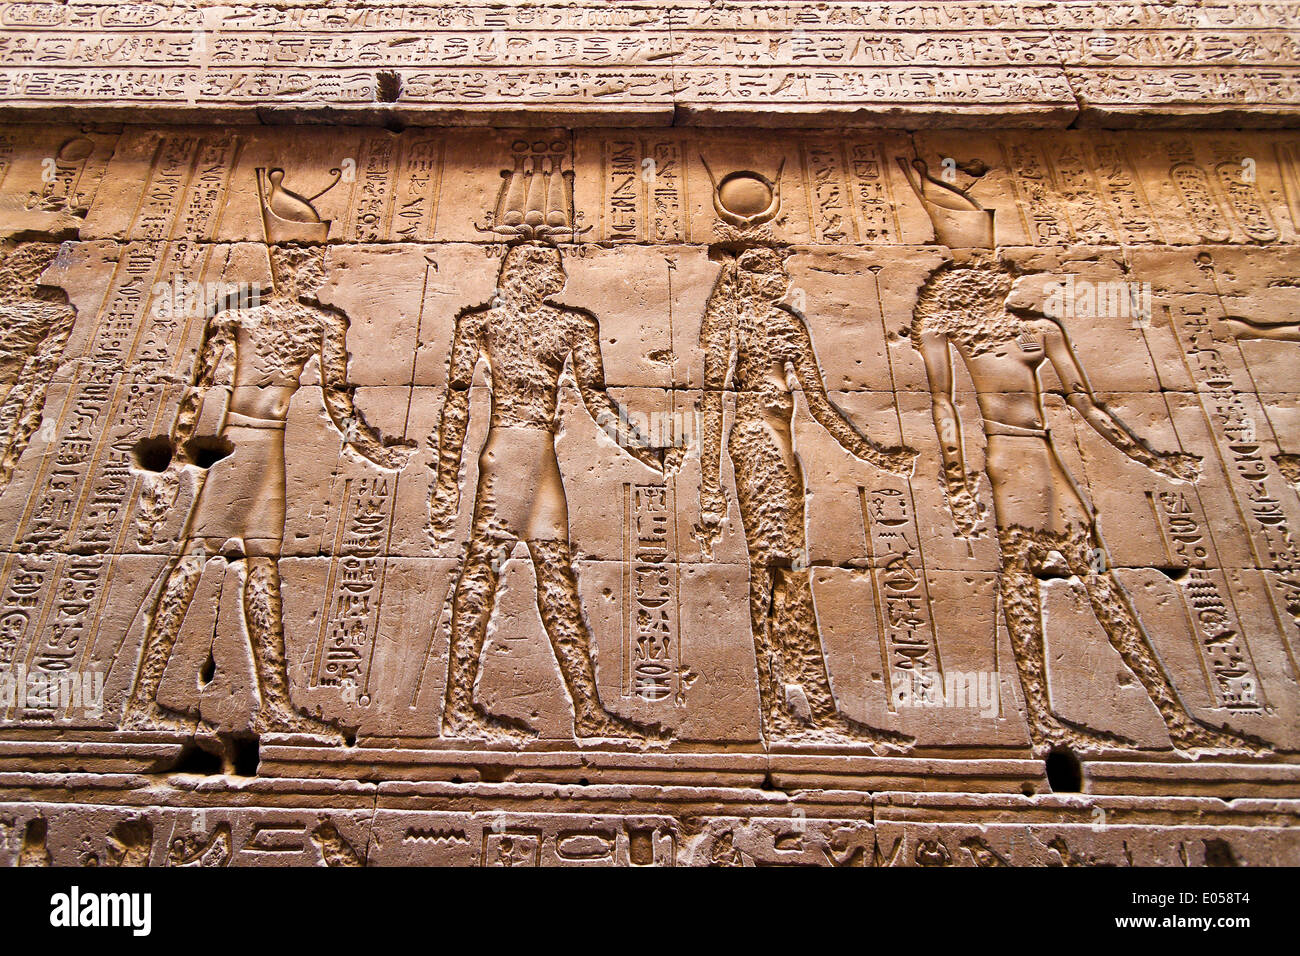 África, Egipto, Edfu, el templo de Horus. Imponente edificio de la Ptolemaeerzeit., Afrika, ƒgypten, Imposantes Horus-Tempel.bauwerk Foto de stock